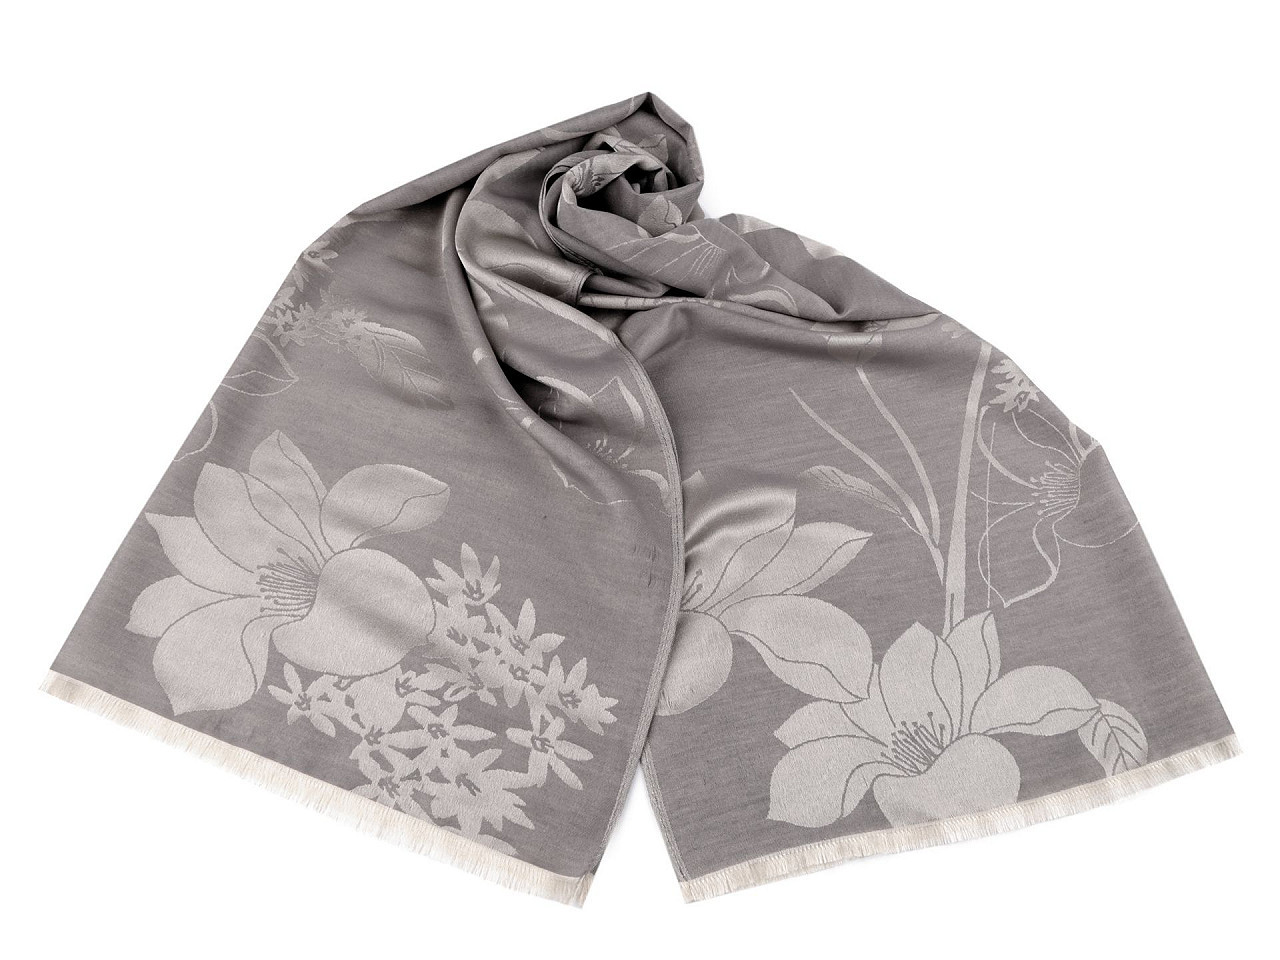 Šátek / šála s květy typu pashmina 74x185 cm, barva 3 šedá světlá